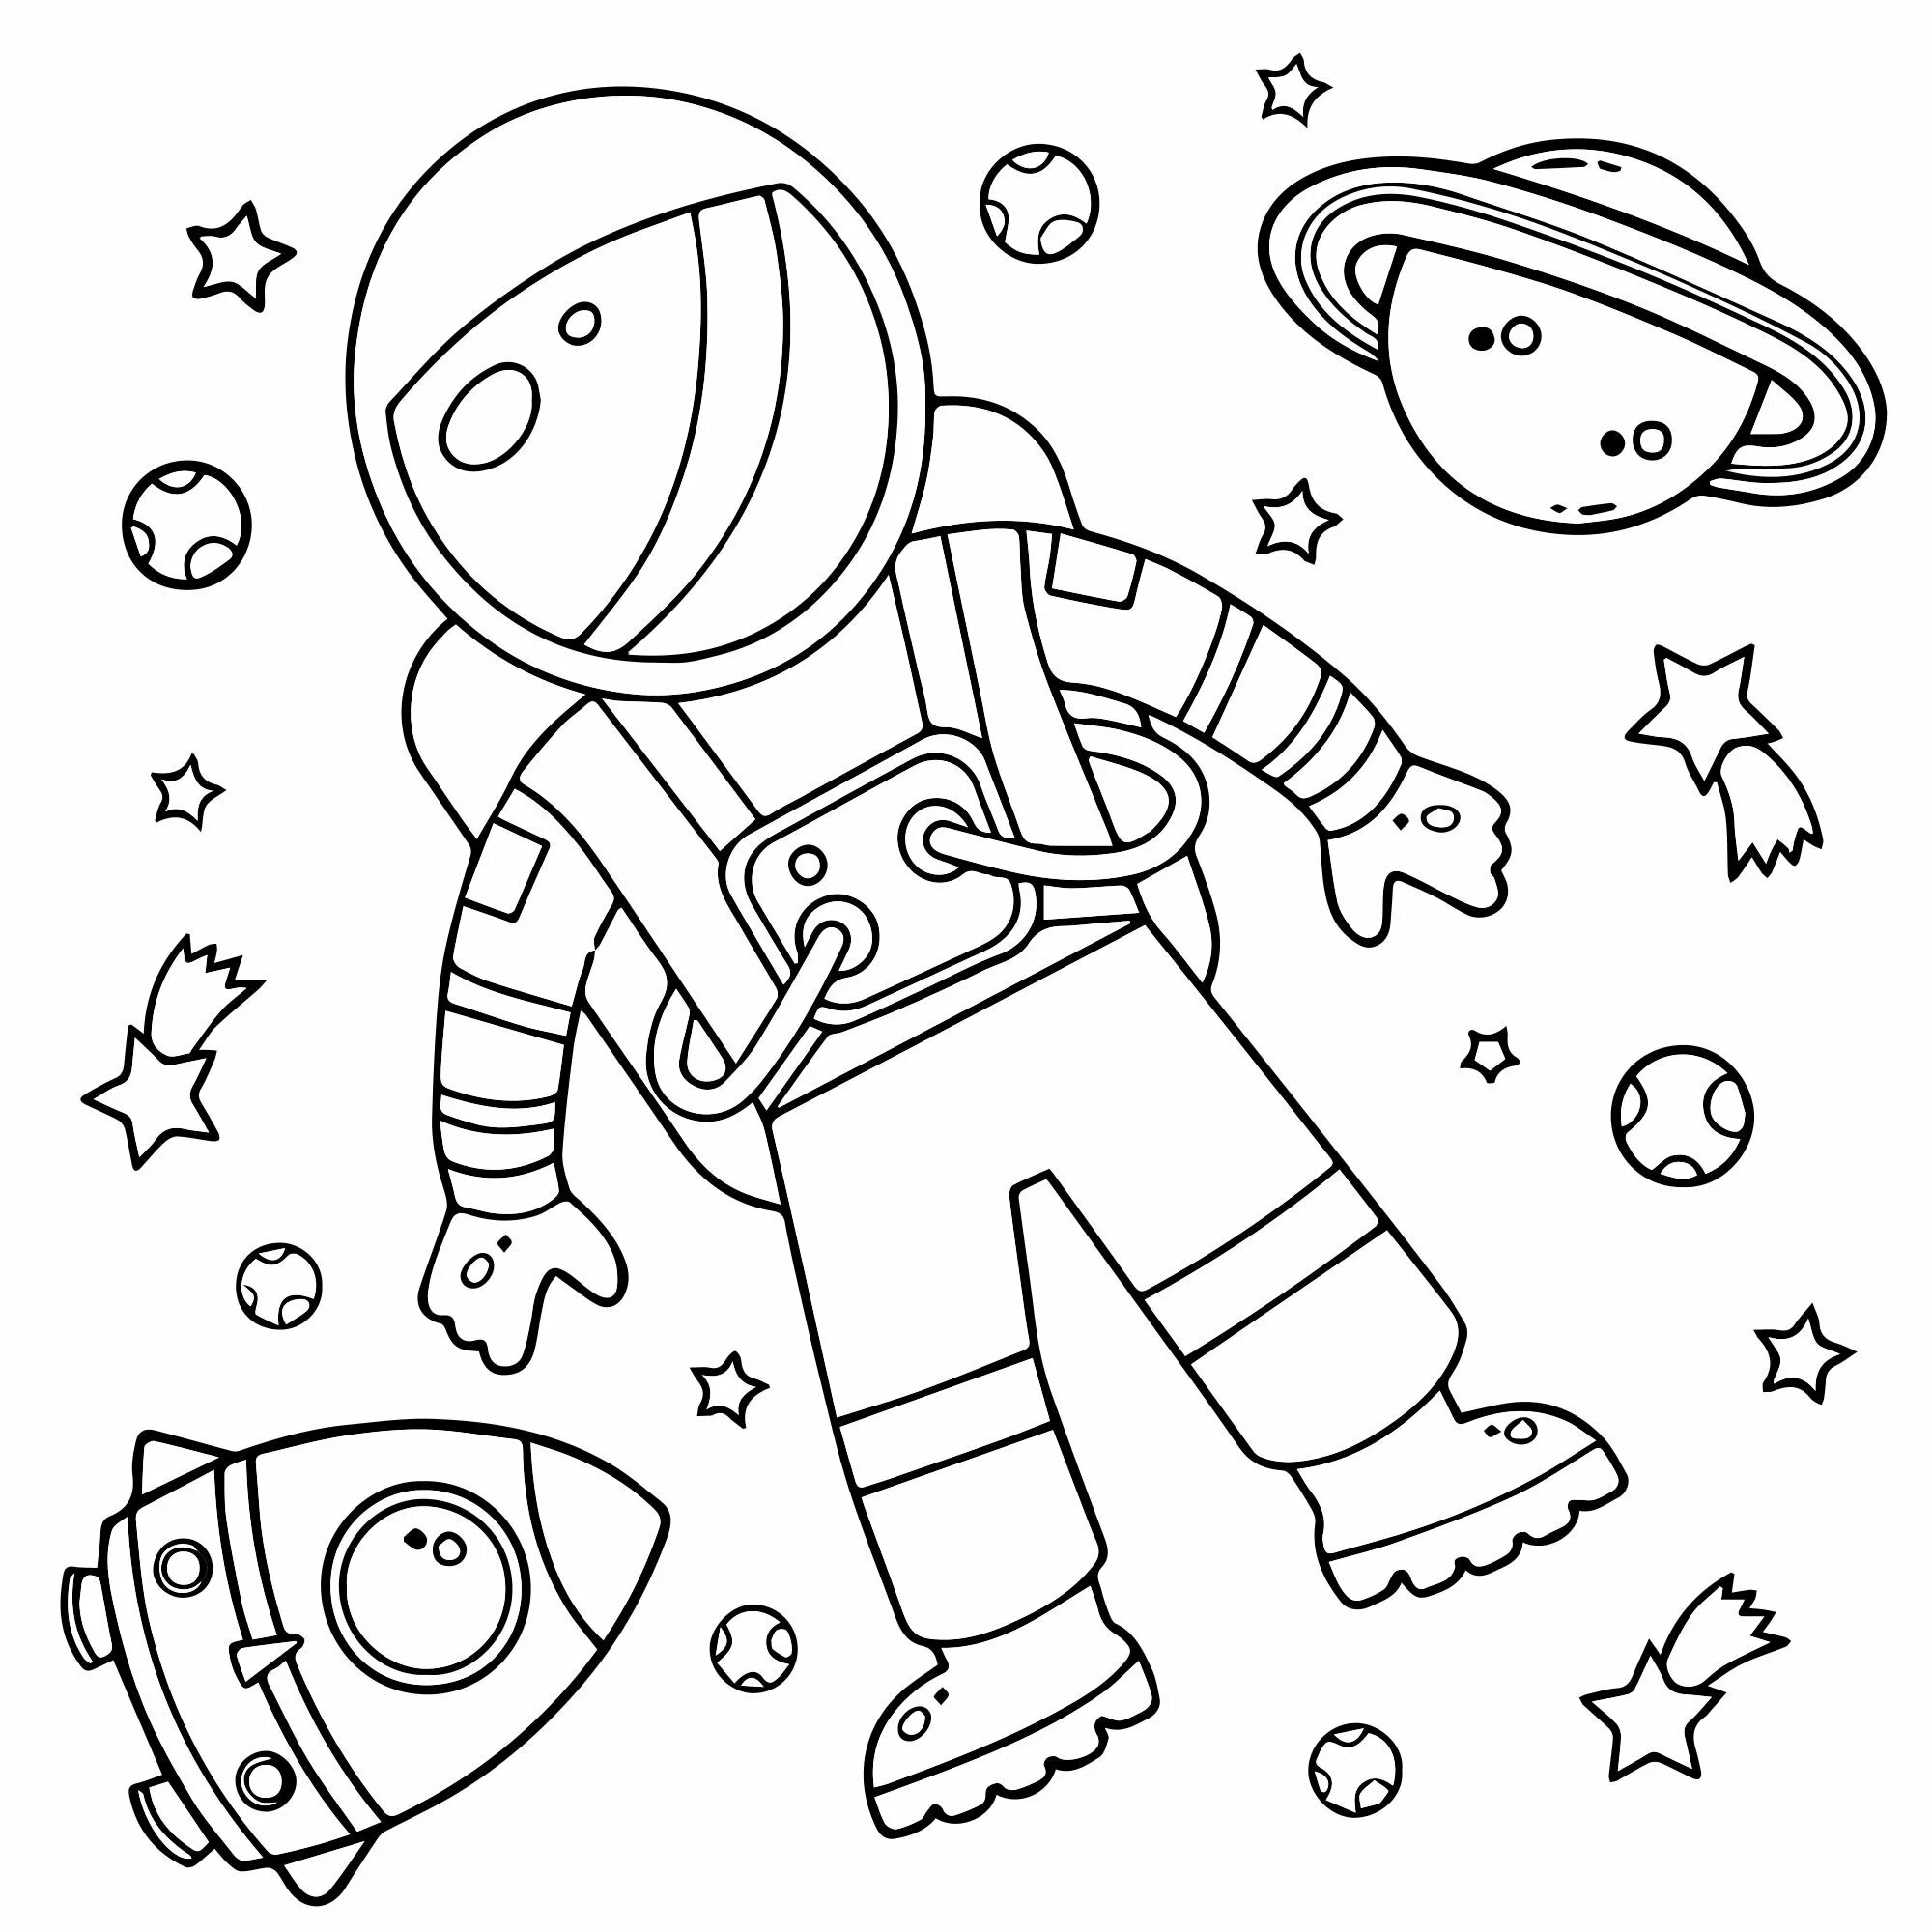 Космонавт разукрашки для детей. Раскраска Космонавта в скафандре для детей. Космос раскраска для детей. Космонавтика раскраски для детей. Космонавт раскраска для детей 4 5 лет